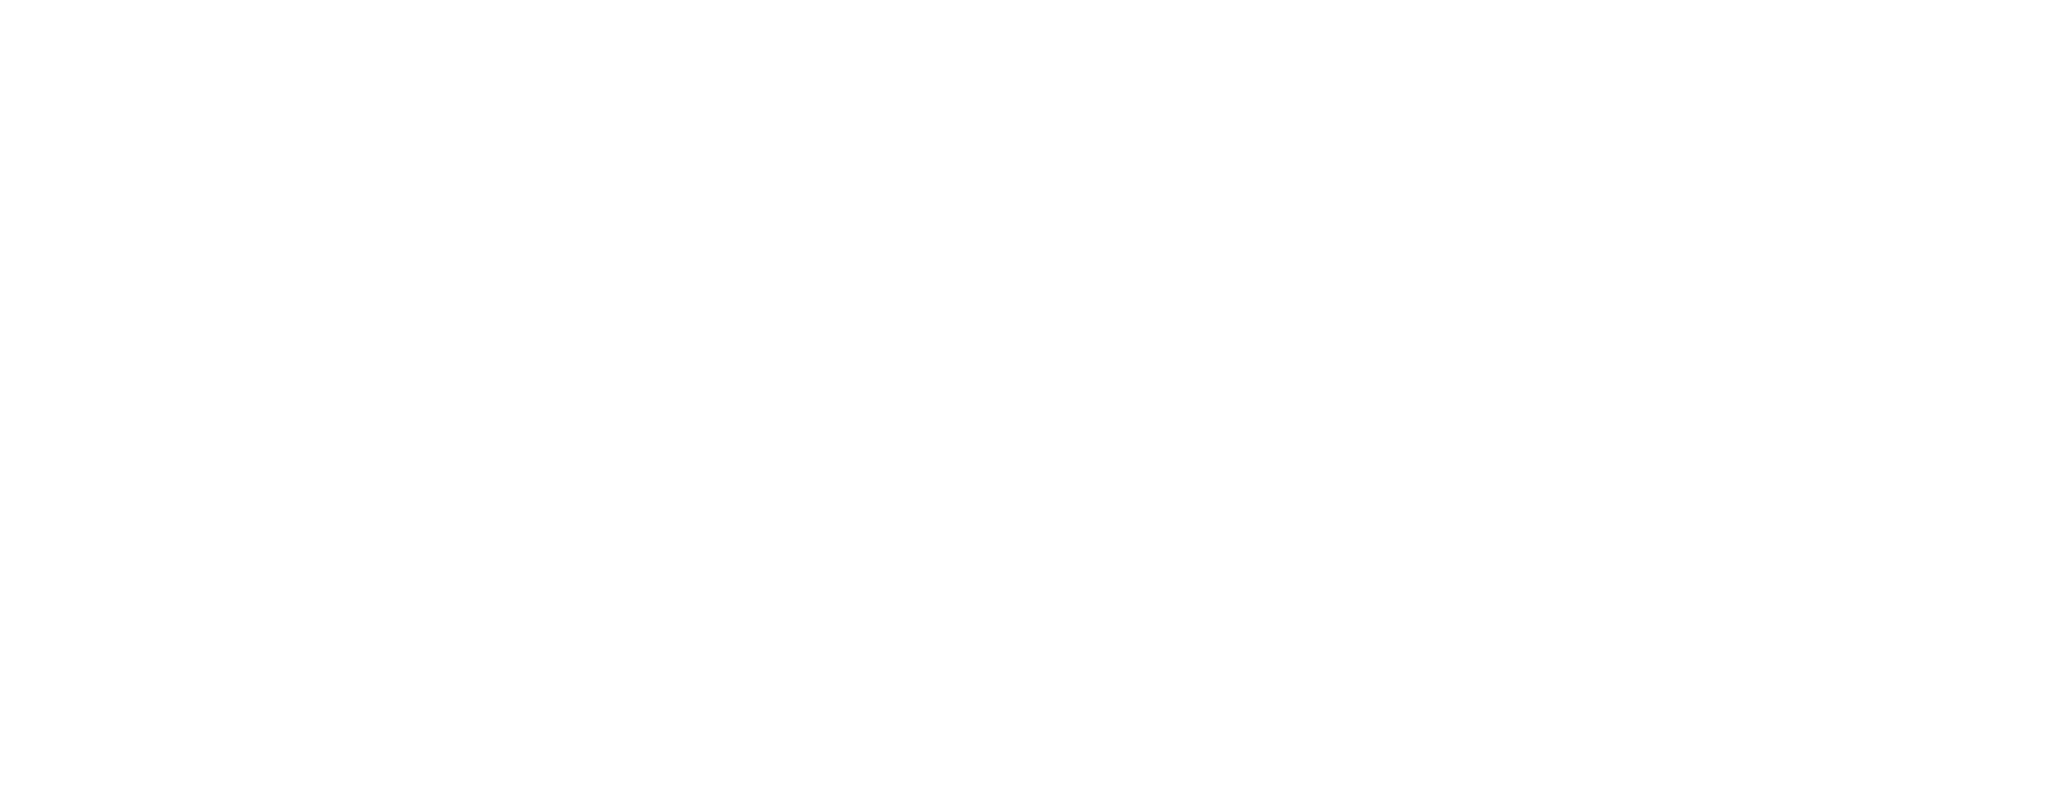 Les Cayes Marathon – Haiti